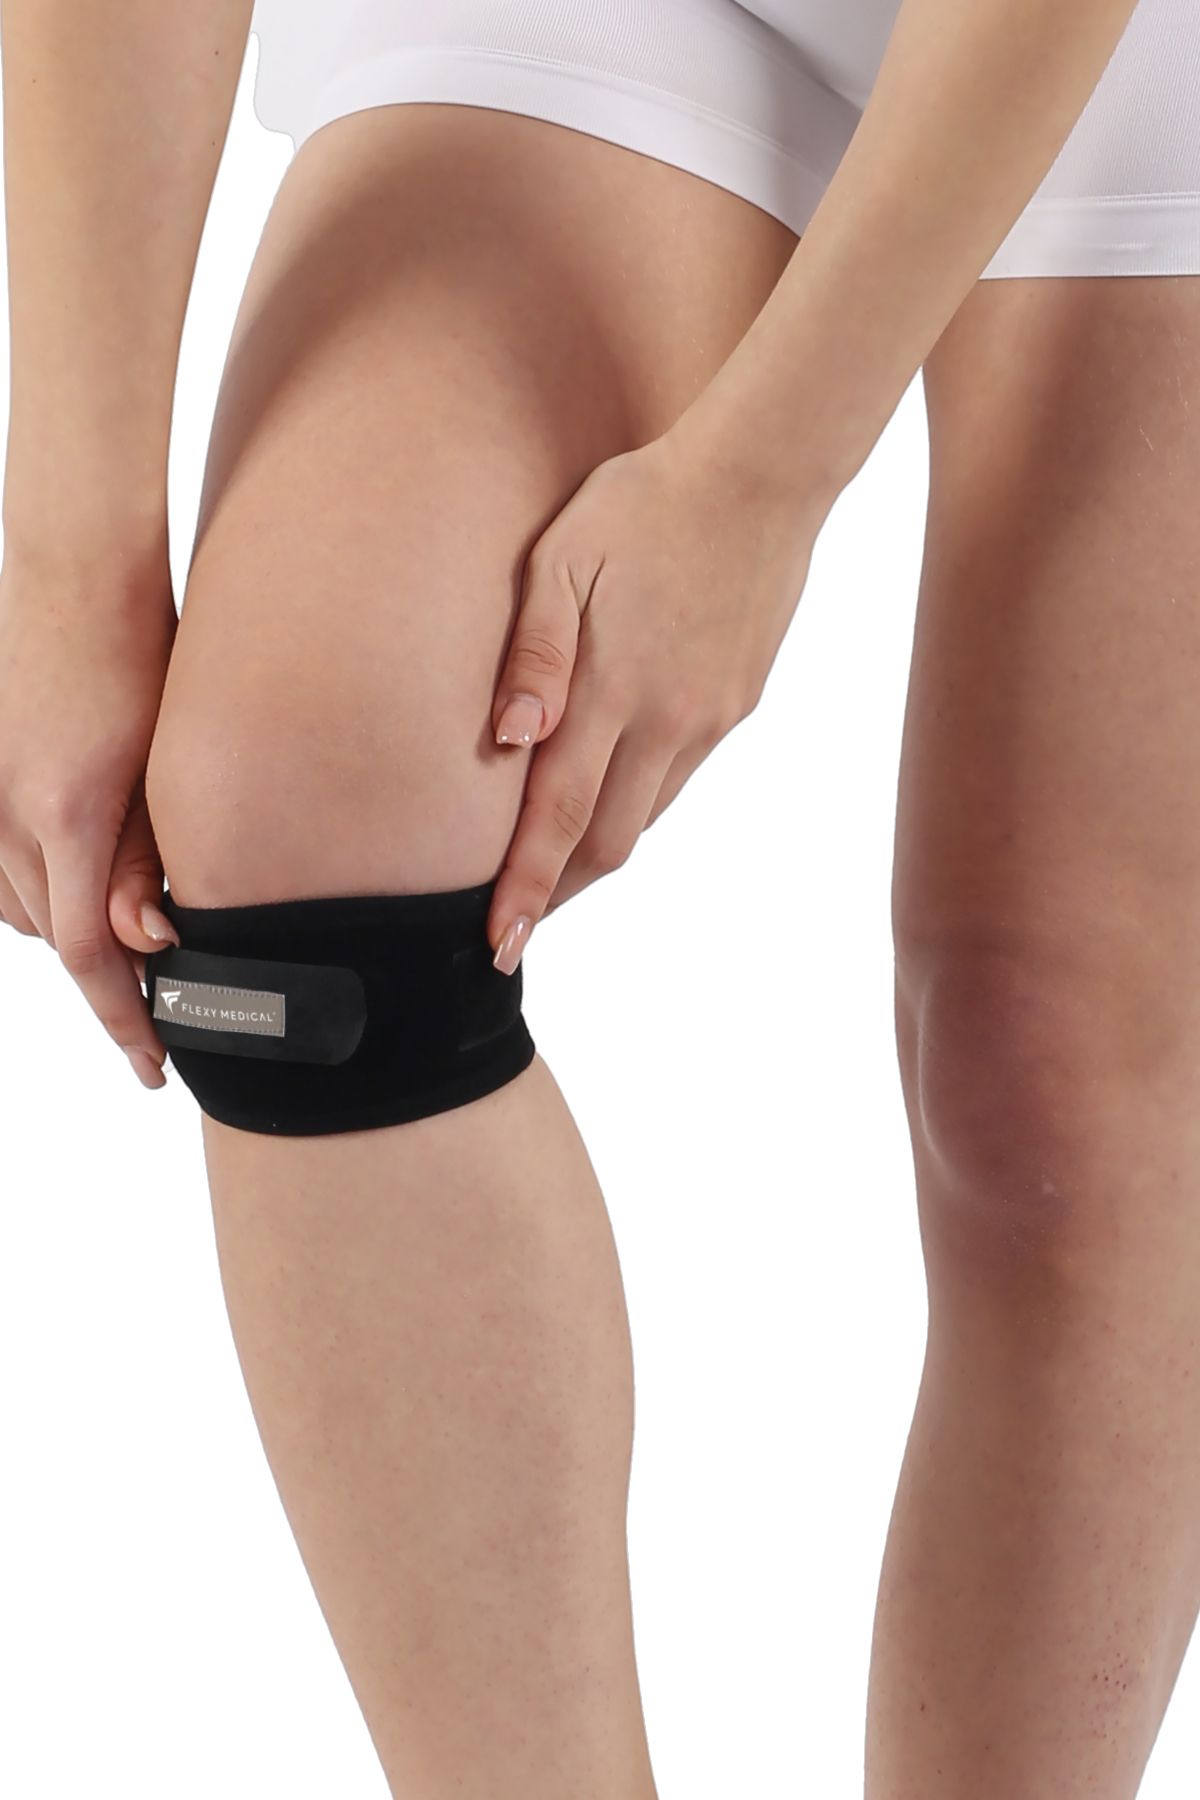 Flexy Medical Patella Tendon Stabilizasyon Bandı Sporcu Bandajı Silikon Ped Destekli Ve Diz Ağrılarında Rahatlama